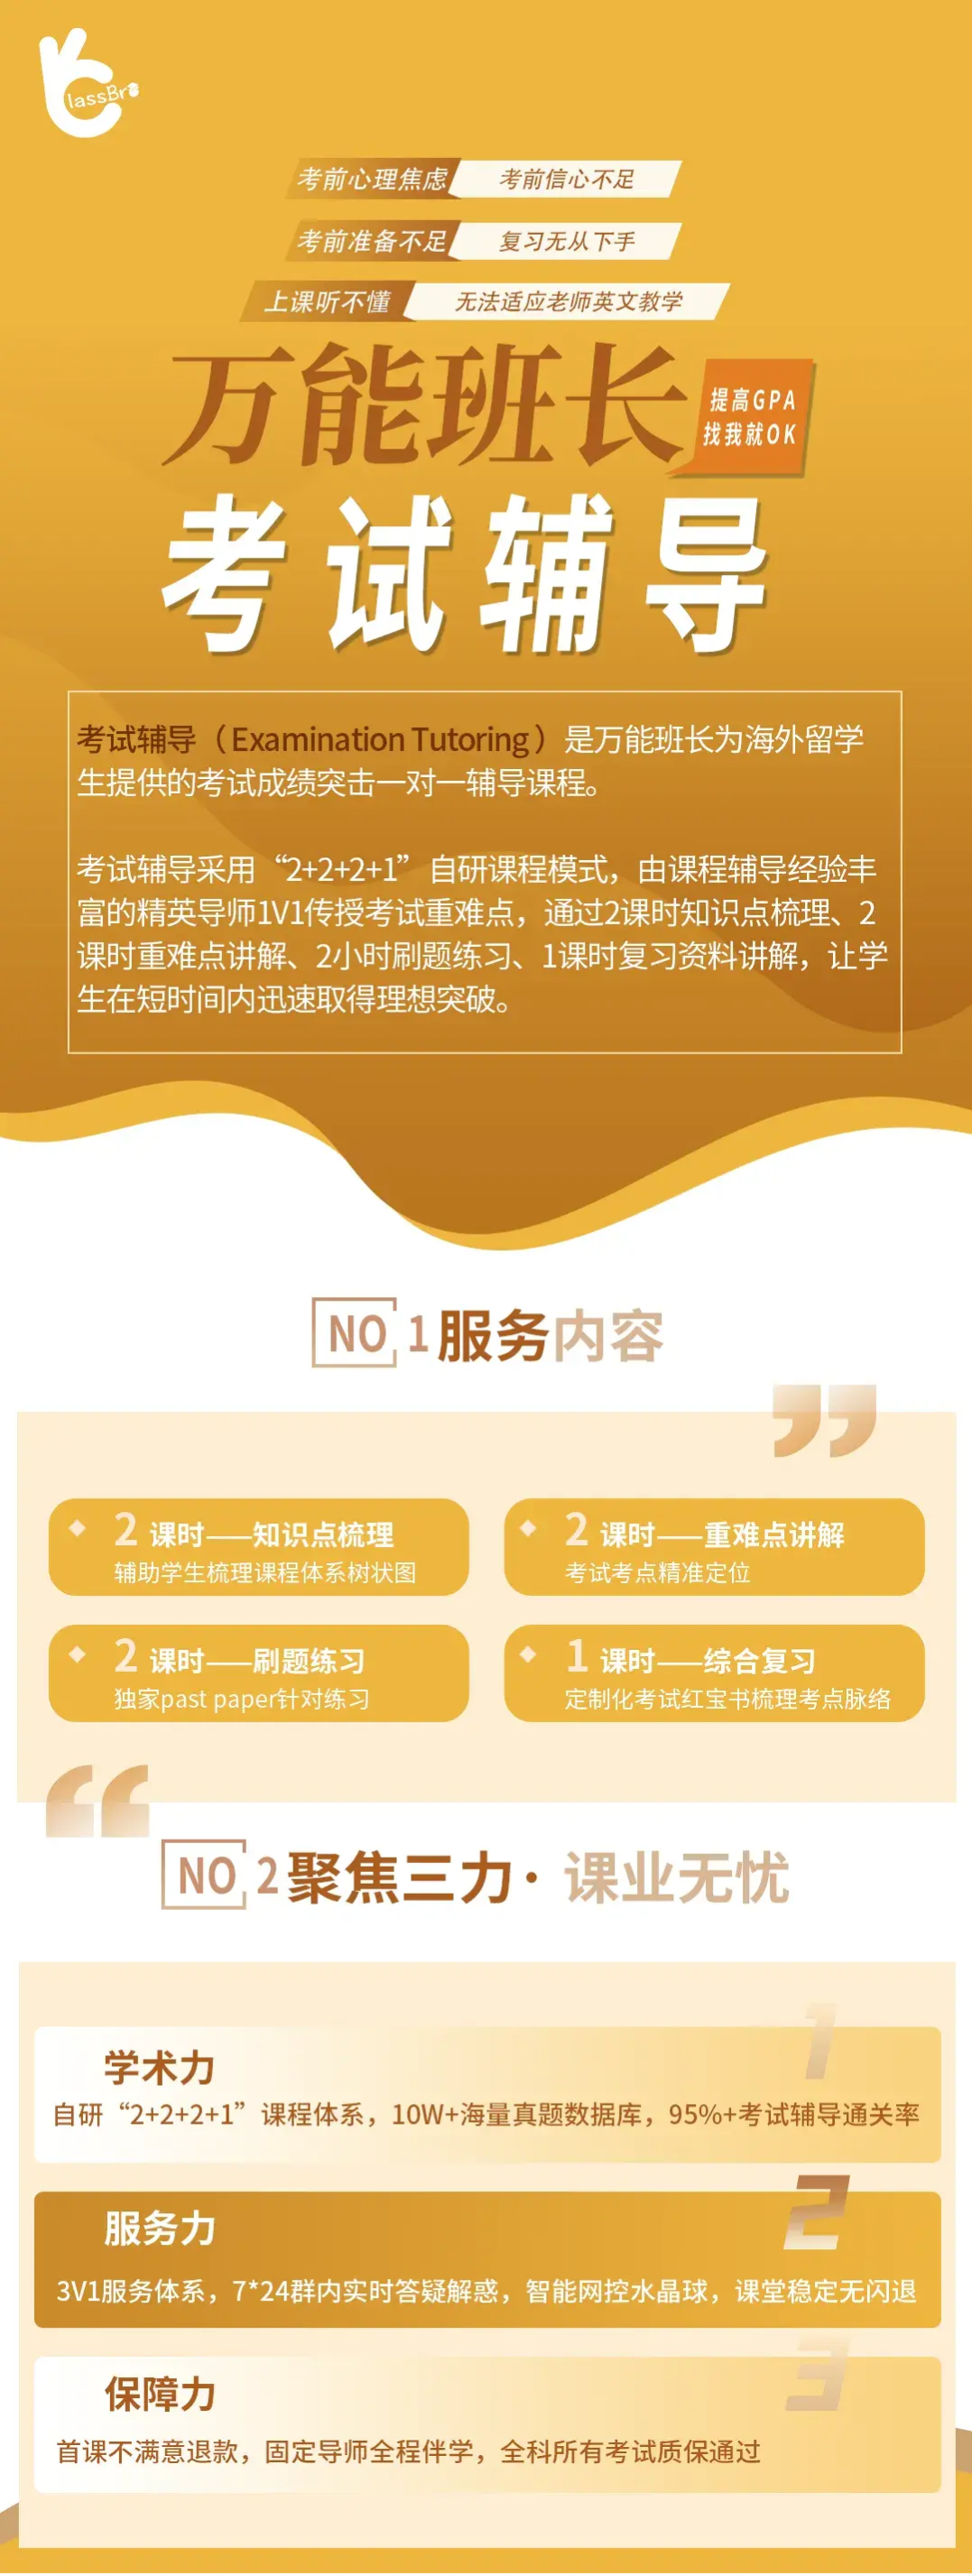 中文输入法不显示选字框_中文输入法ubuntu_ubuntu 16.04 中文输入法